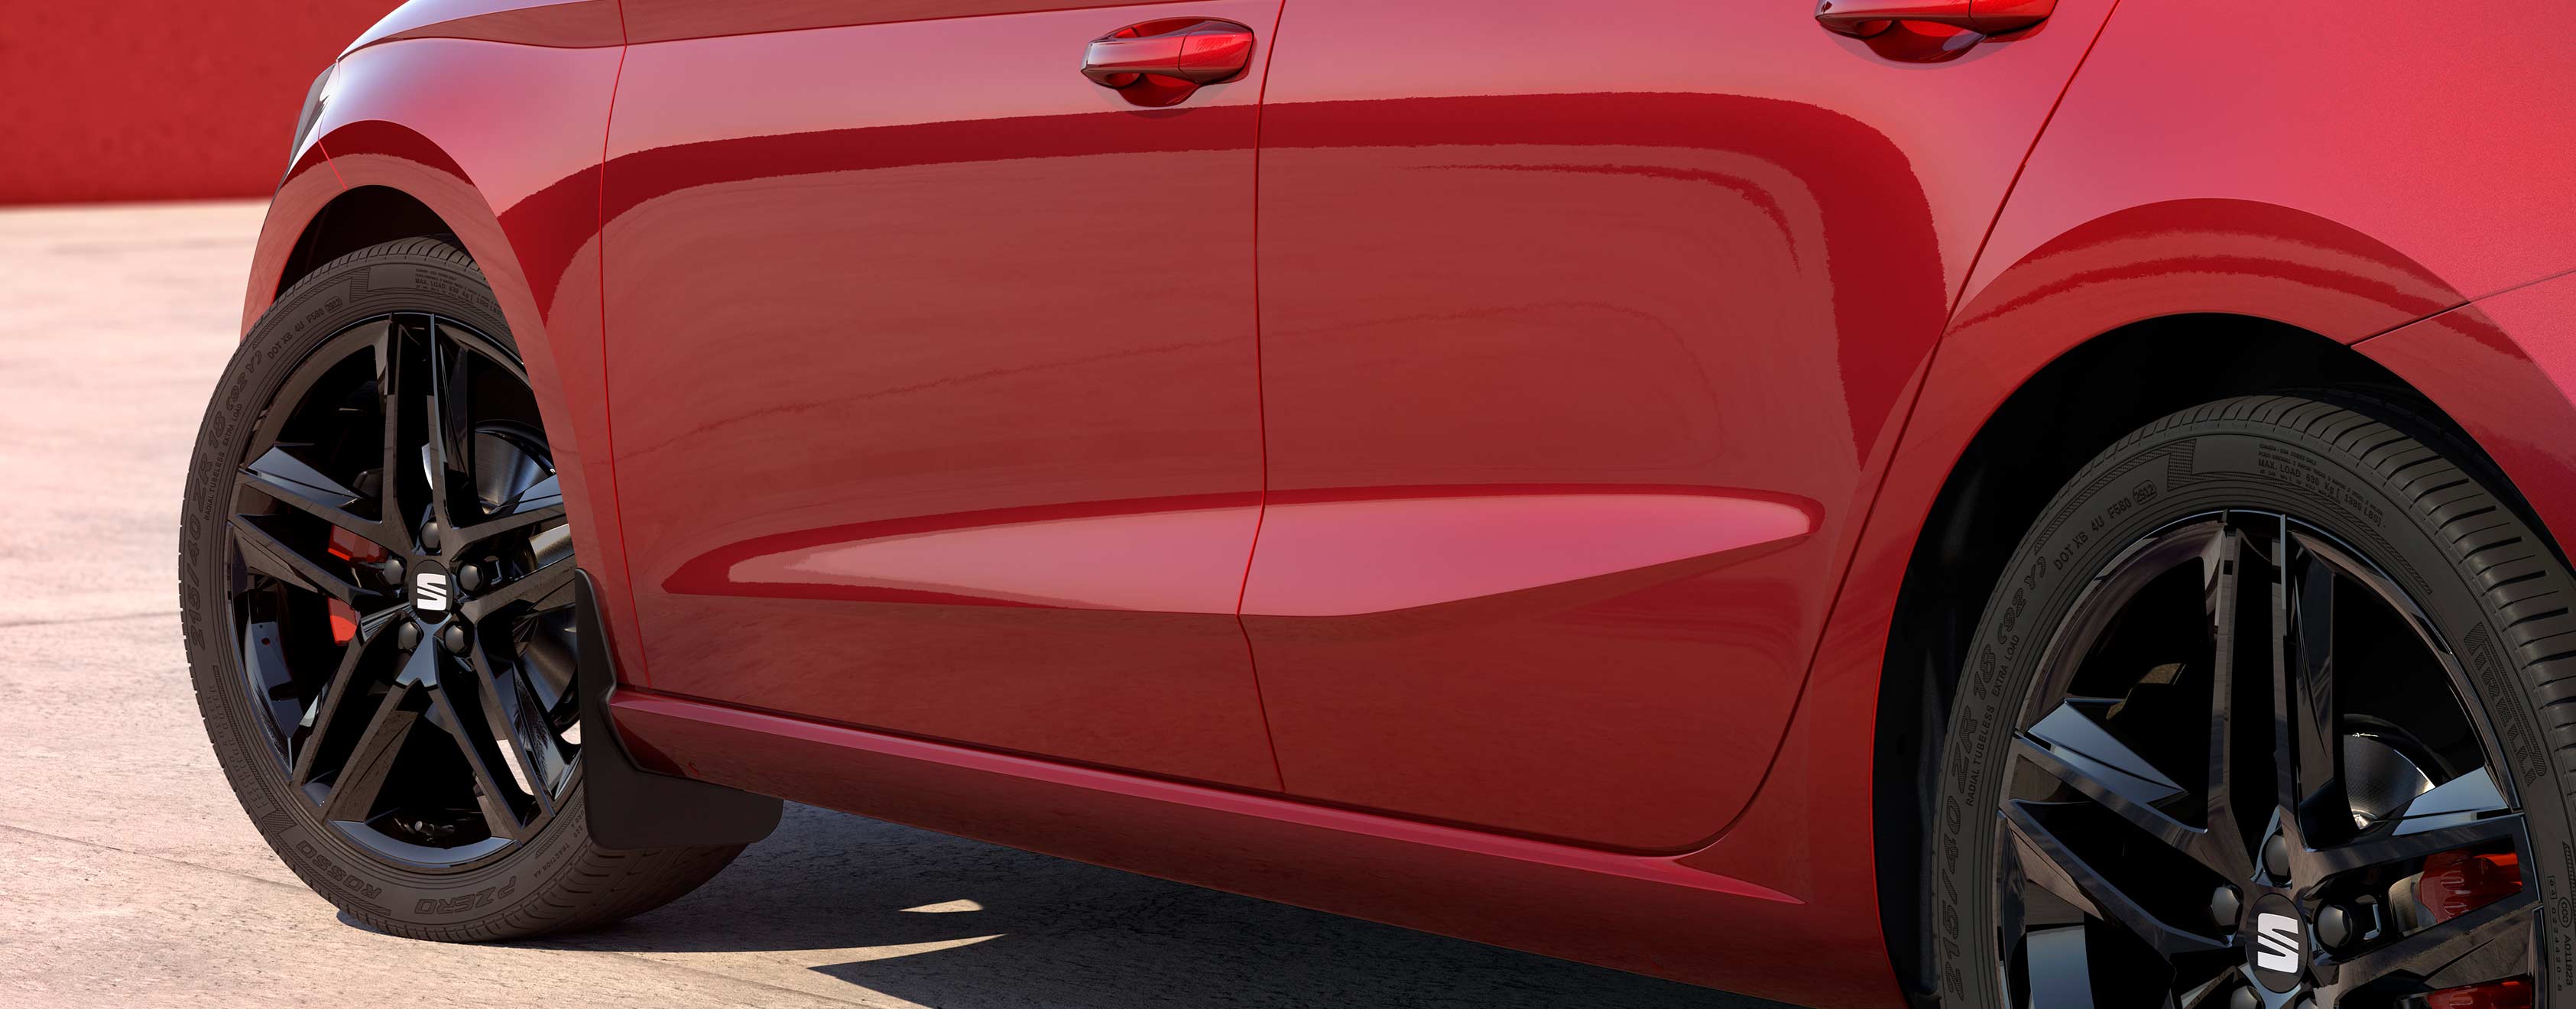 SEAT Ibiza de couleur desire red avec garde-boue avant et arrière